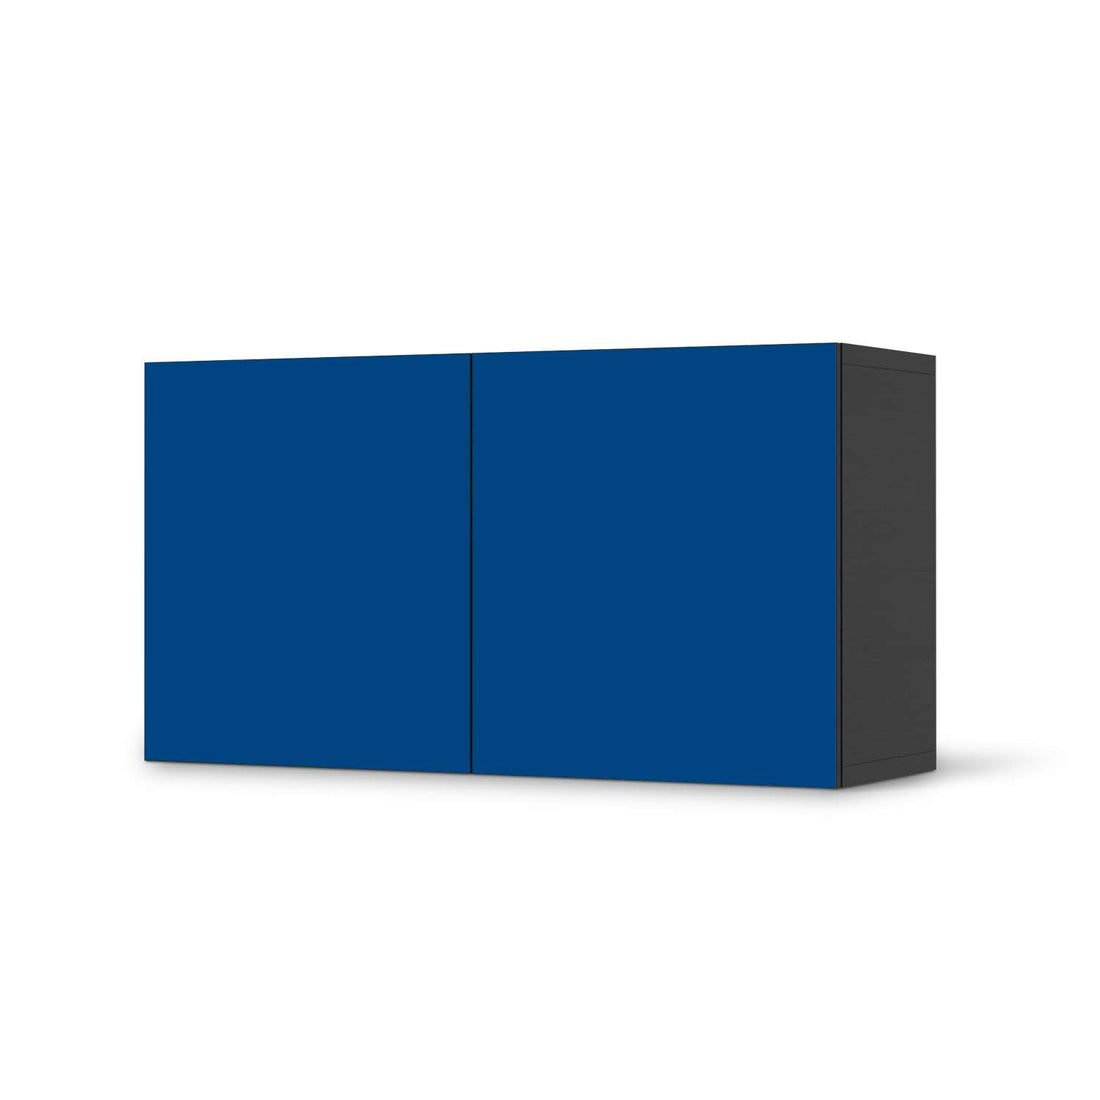 Folie für Möbel Blau Dark - IKEA Besta Regal Quer 2 Türen - schwarz